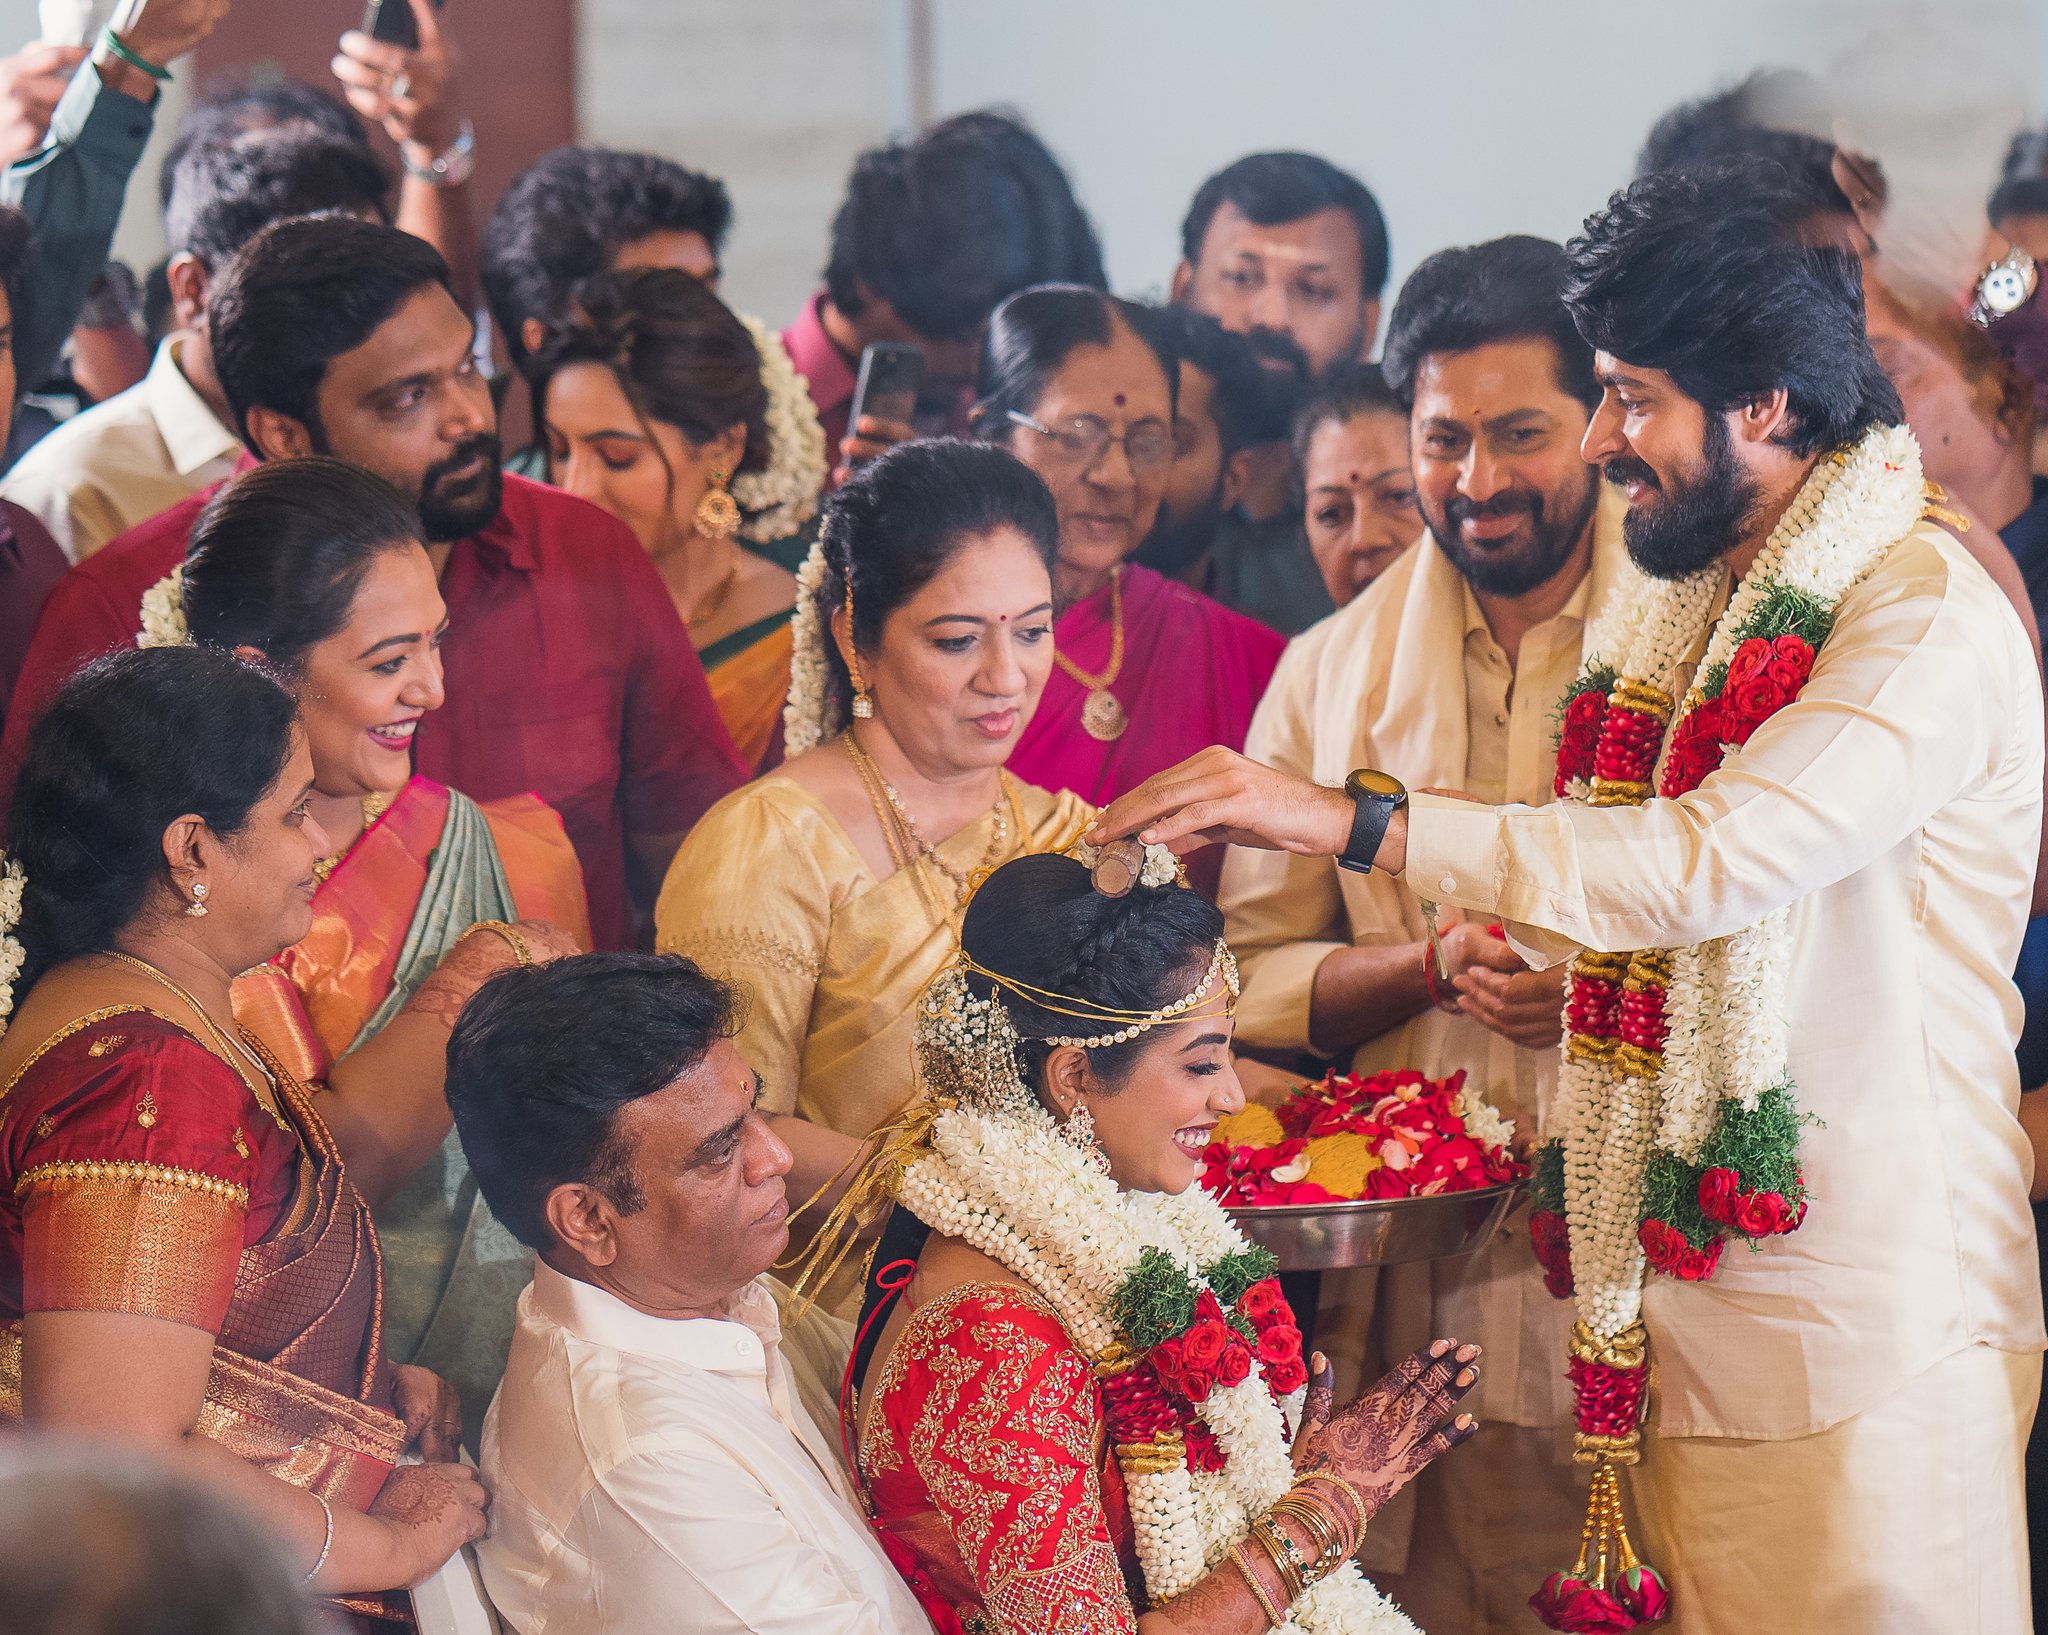 harish kalyan wedding pictures getting viral on social media